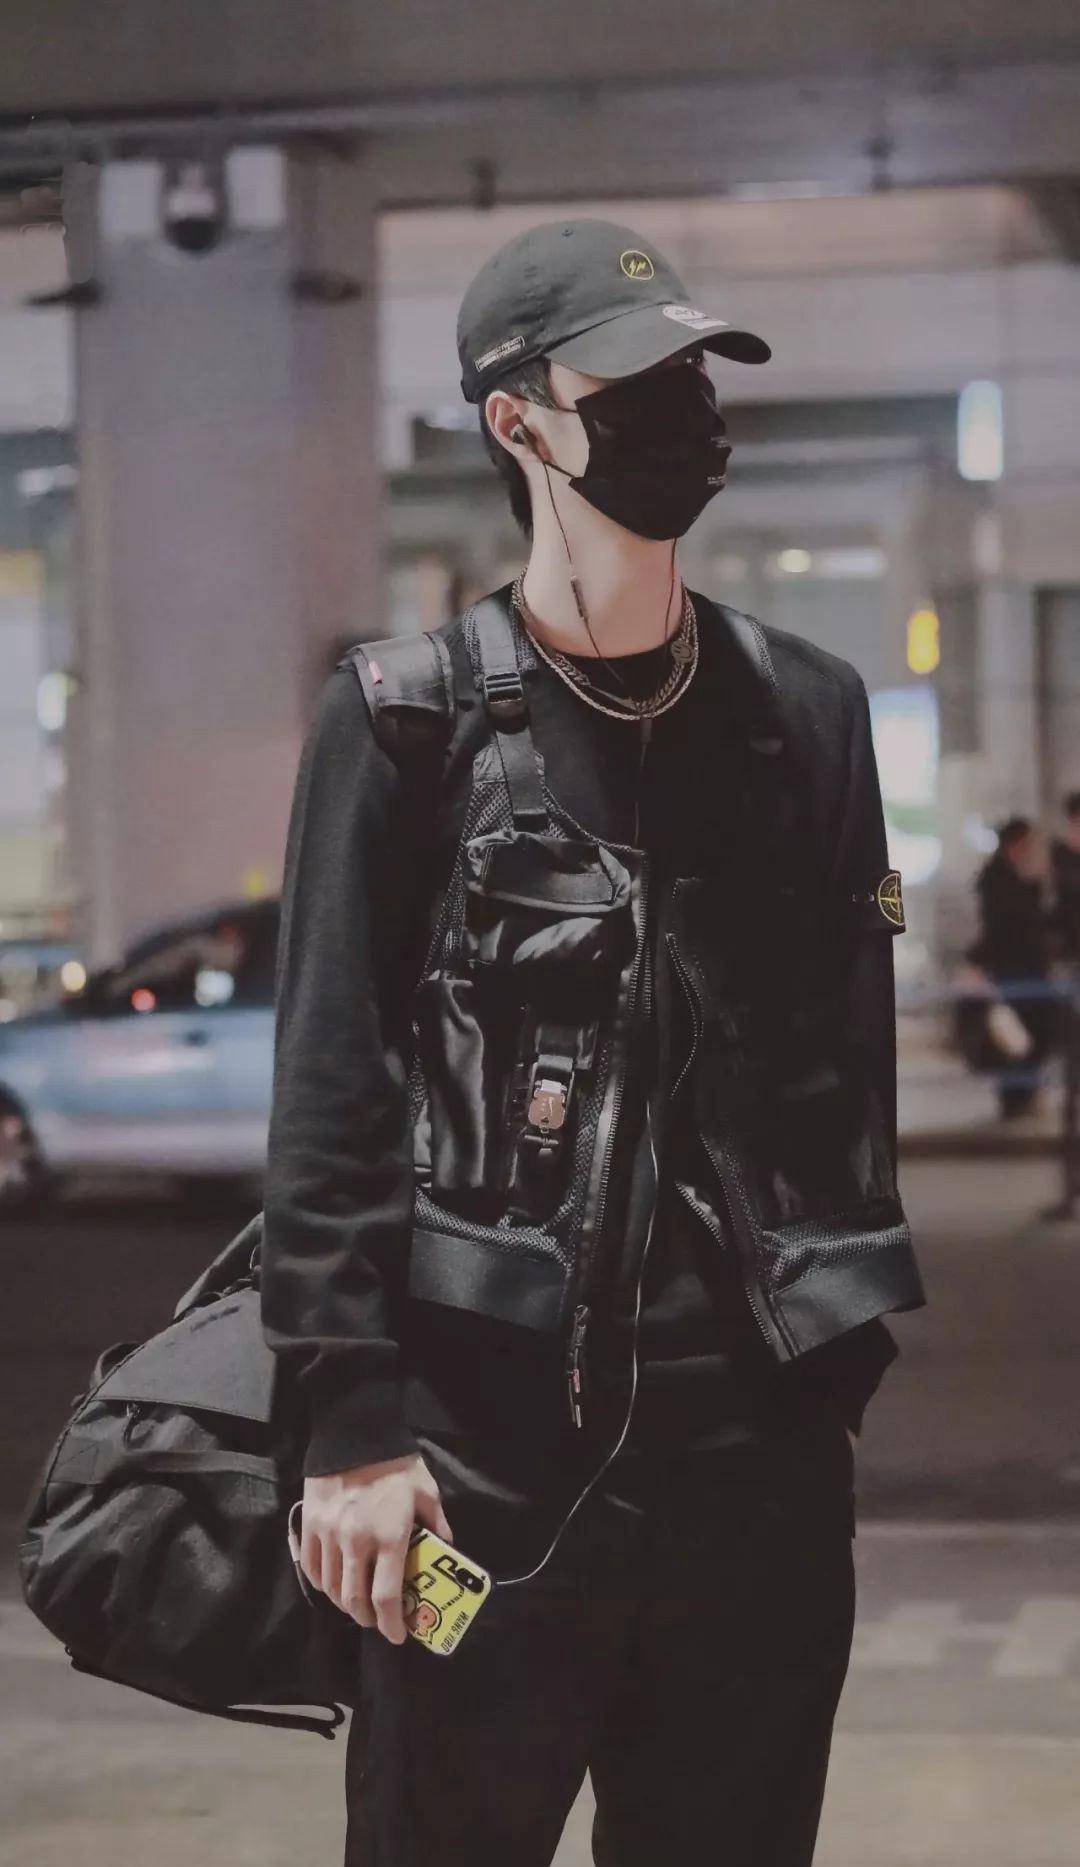 是王一博在机场的图片,他身穿黑色的卫衣,并且外面还有一件工装马甲